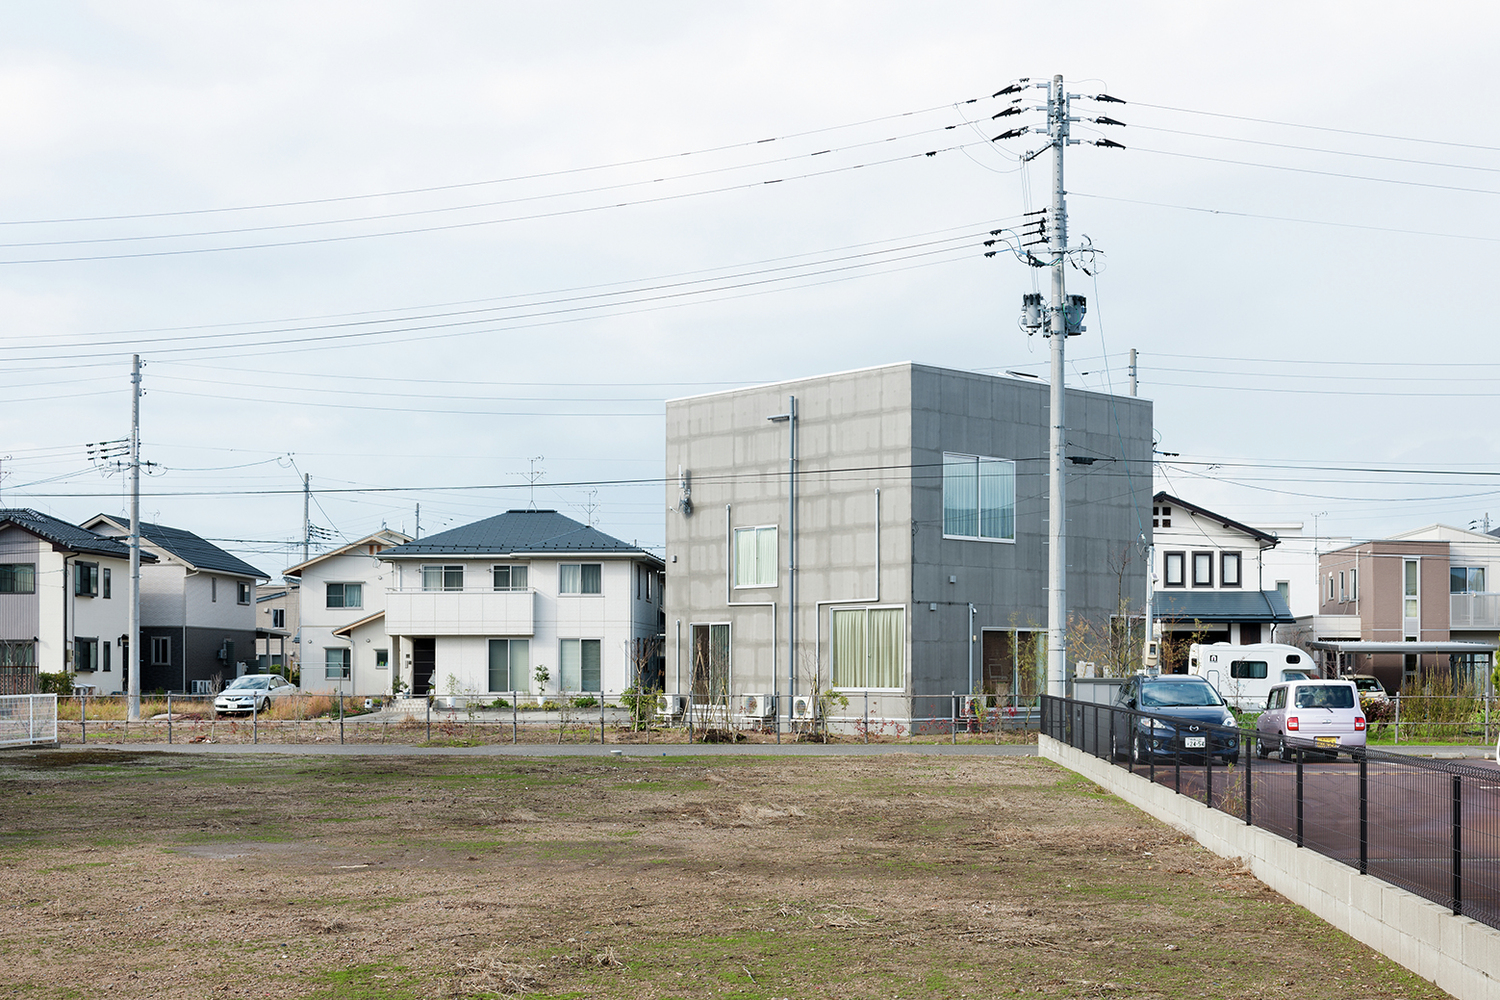 Hình ảnh toàn cảnh ngôi nhà 2 tầng ở Nhật với nhiều mặt thoáng, xung quanh và nhà dân mái ngói